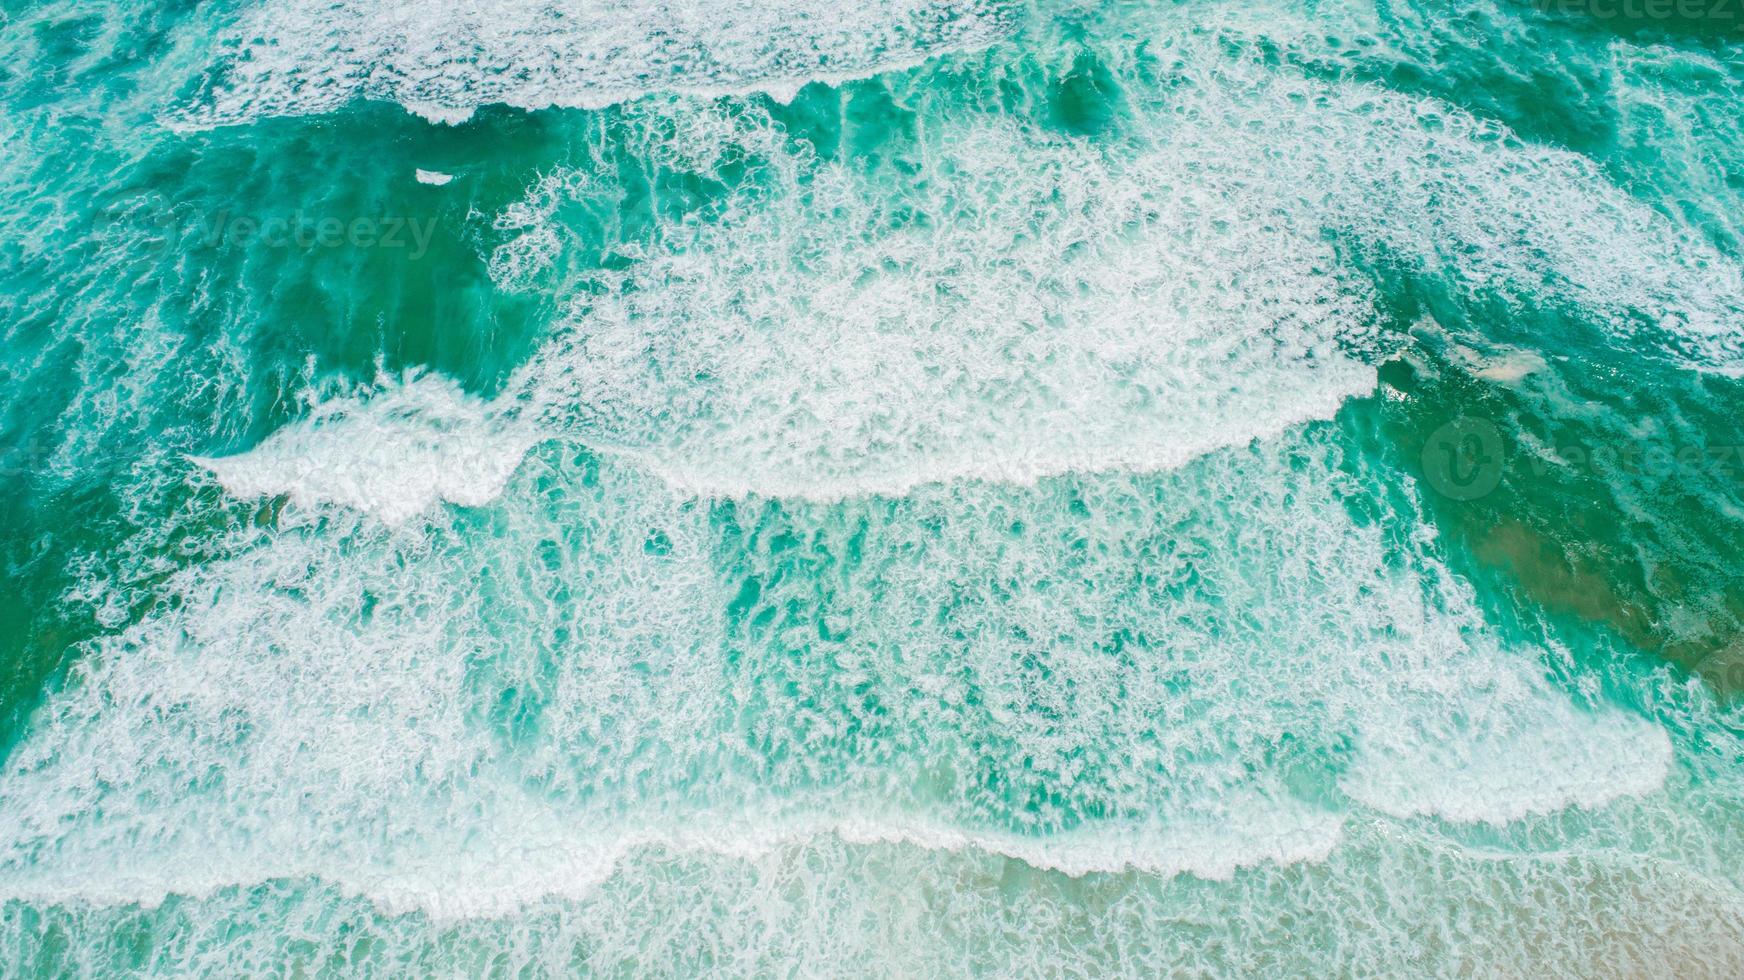 vue de dessus des vagues de texture, de la mousse et des éclaboussures dans l'océan, journée ensoleillée photo